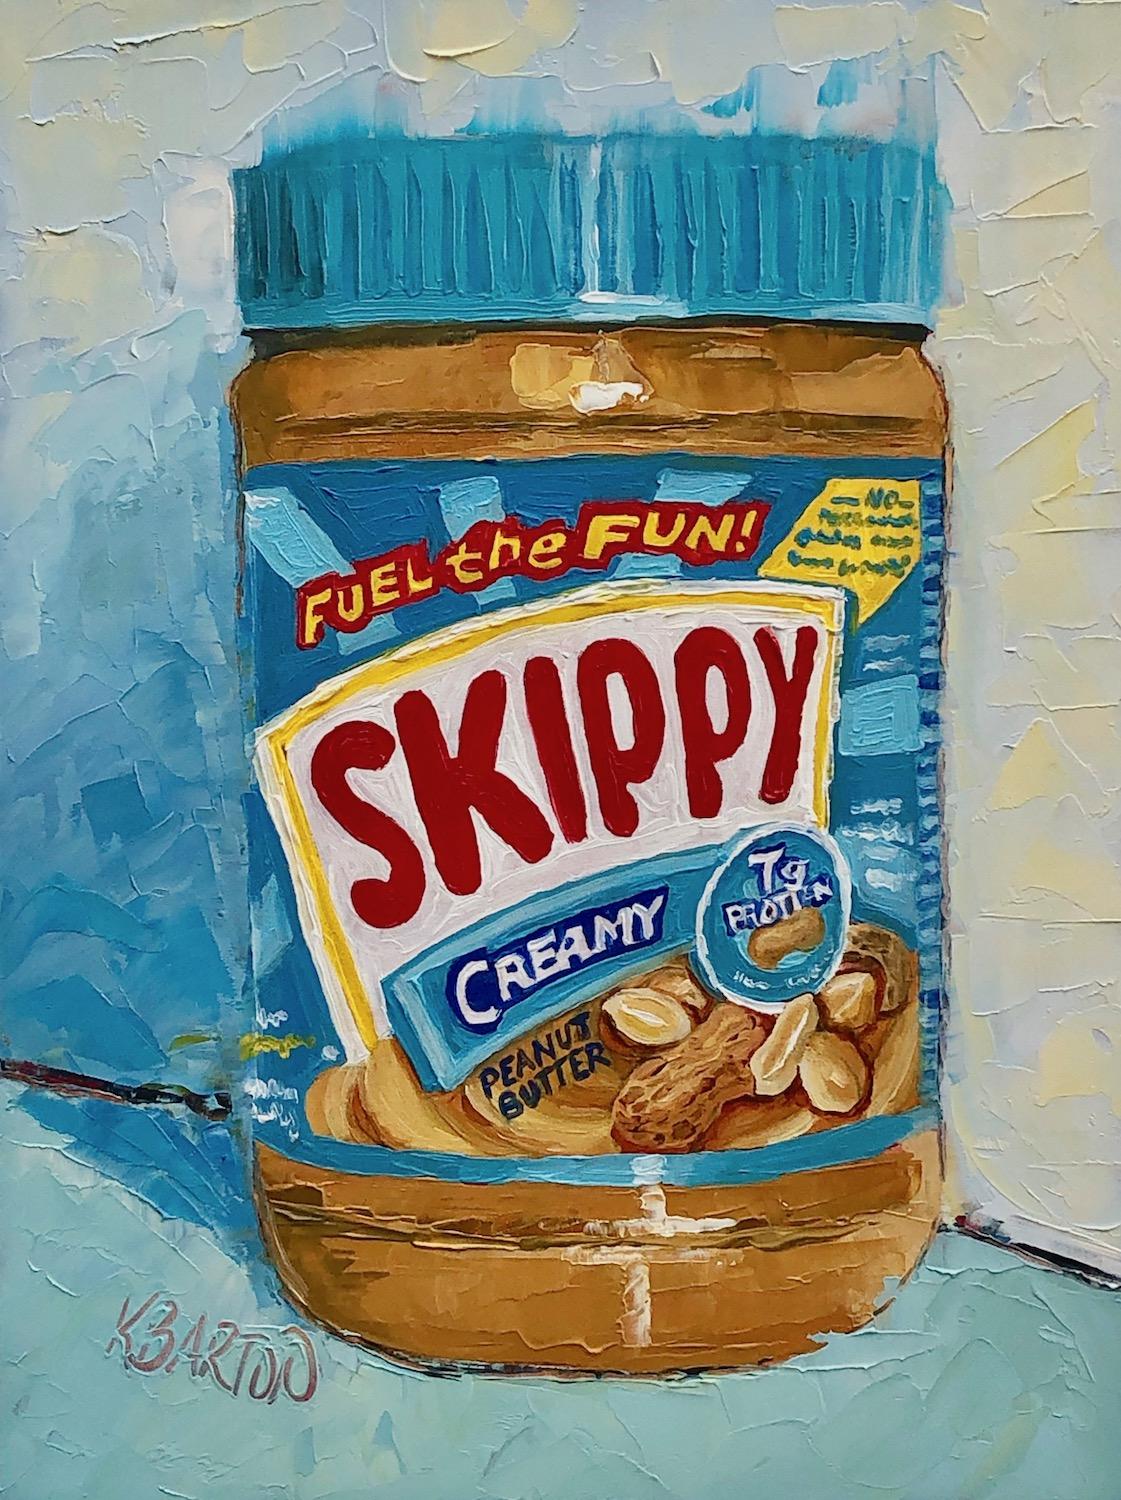 Skippy Creamy - Art by Karen Barton